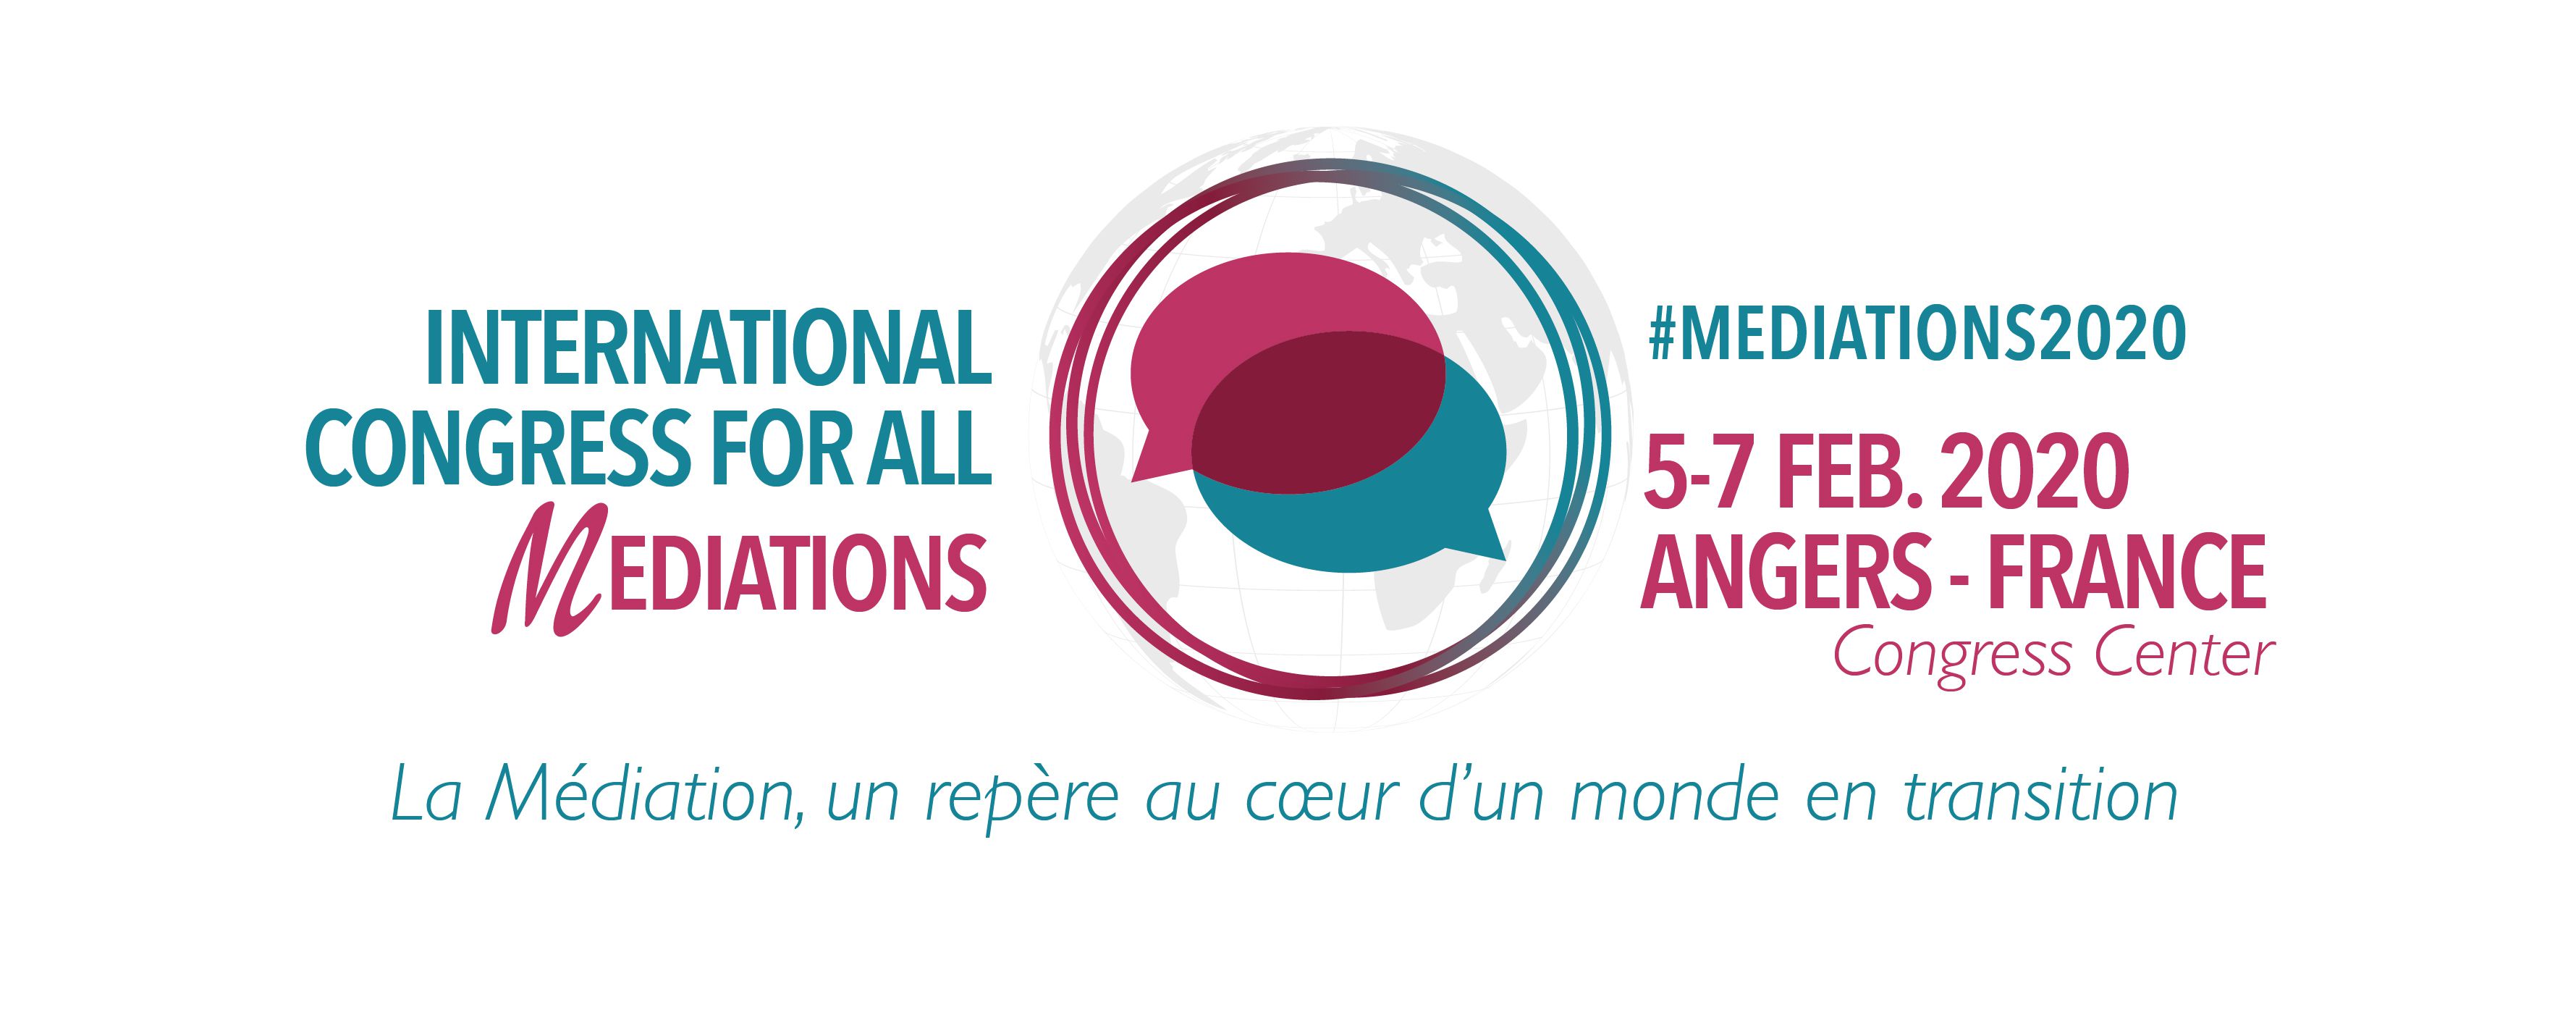 Le Congrès International des Médiations à Angers du 5 au 7 février 2020